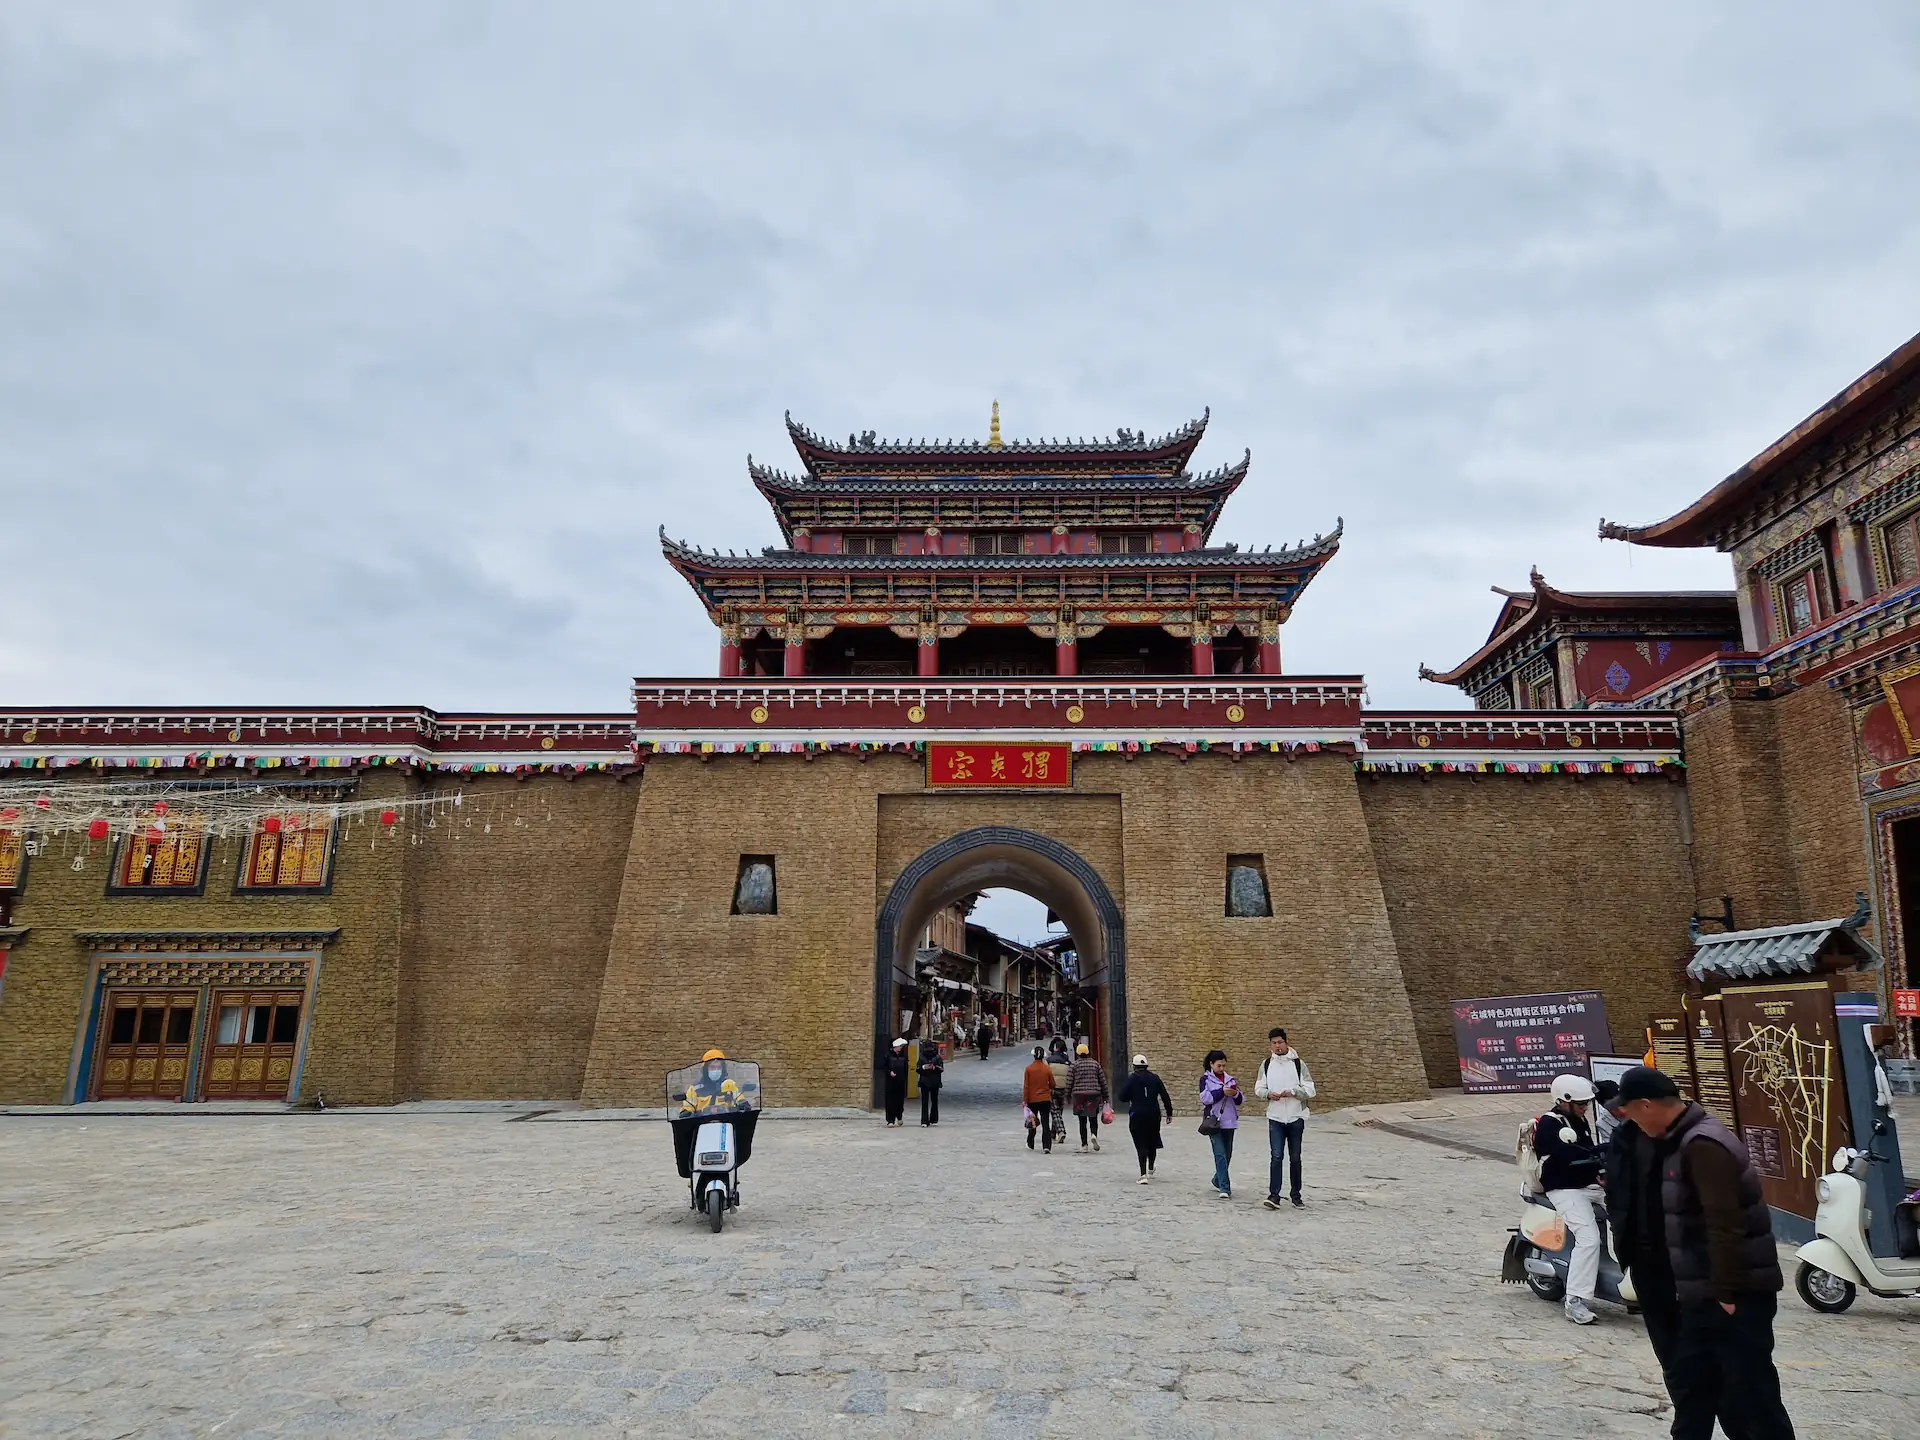 Une porte de ville impressionnante aux allures de temple.